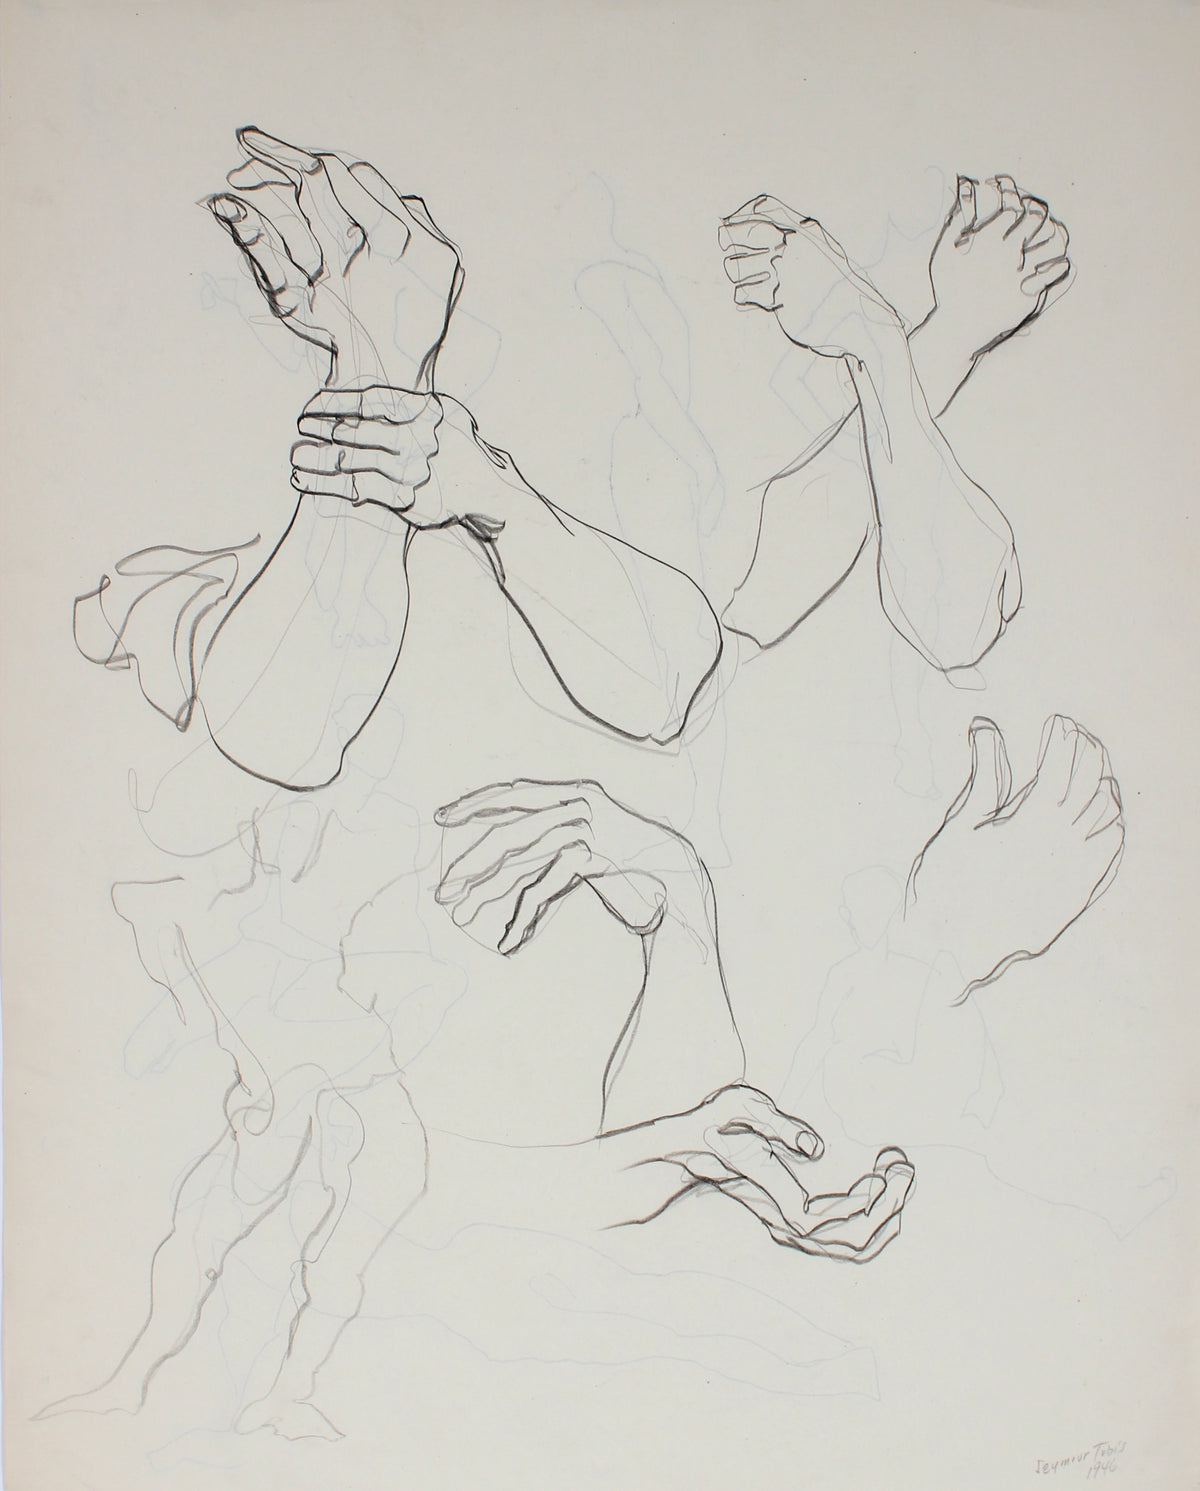 Anatomical Study of Wrists &amp; Hands &lt;br&gt;1946 Ink and Graphite on Paper &lt;br&gt;&lt;br&gt;#66854